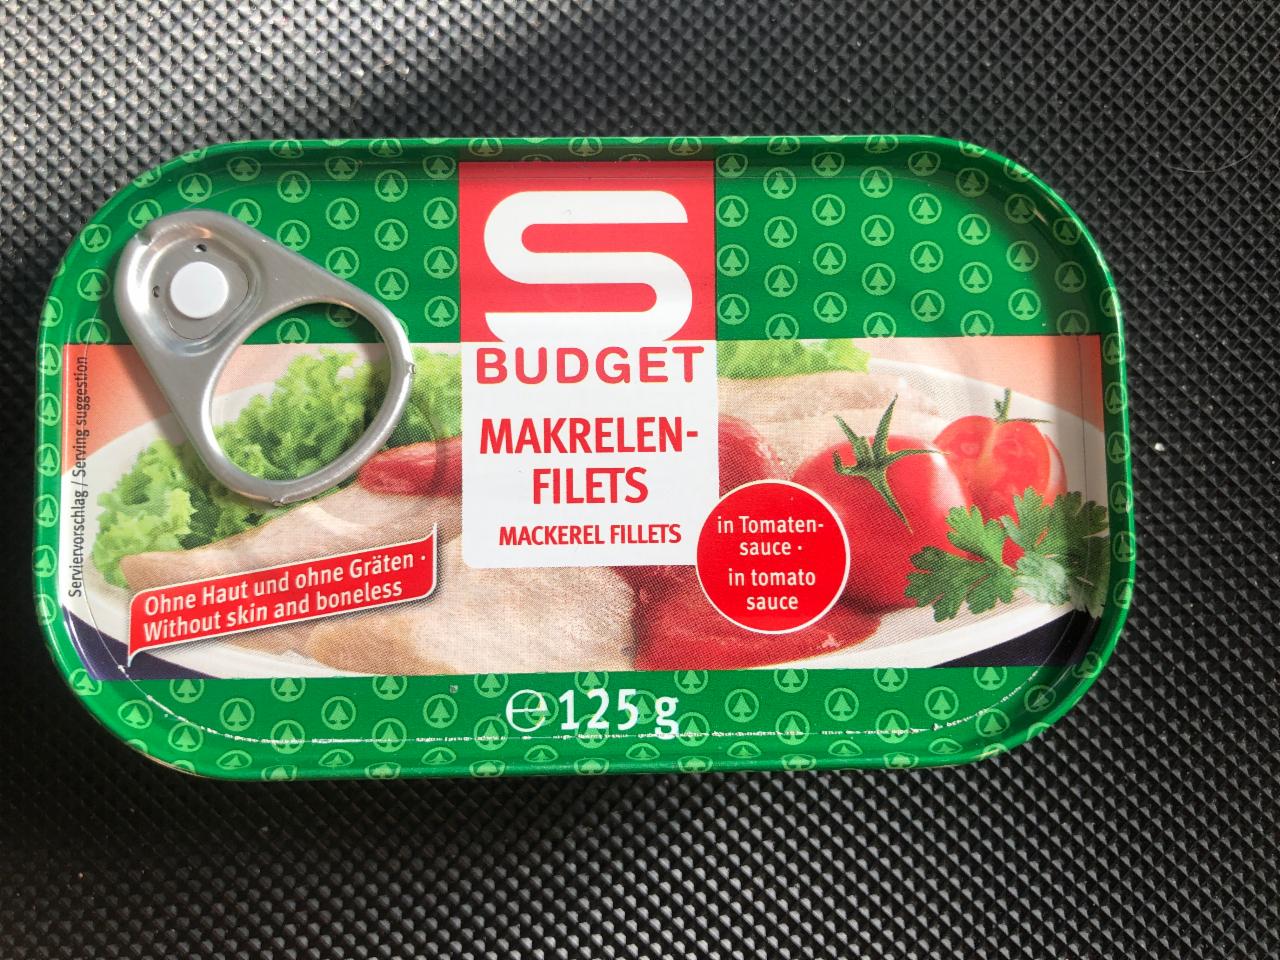 Fotografie - Makrelen Filets in Tomaten Sauce S Budget